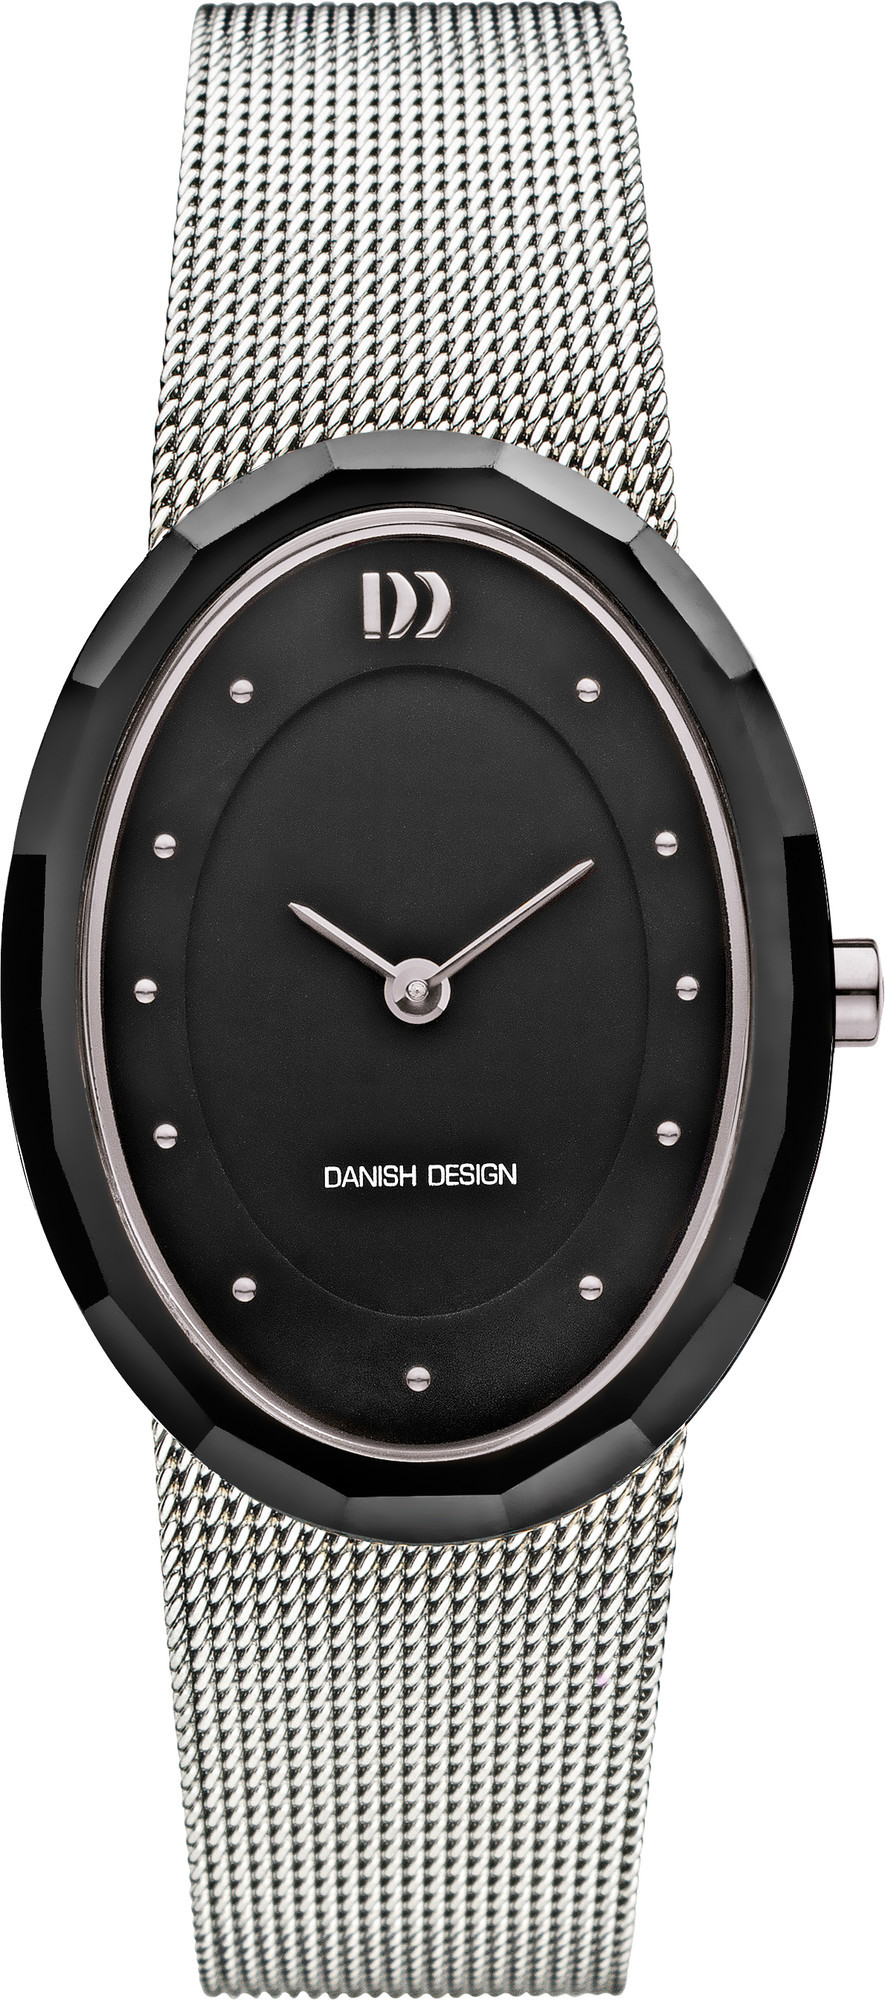 Danish Design Horloge 27 mm Stainless Steel and Ceramic IV63Q1170 1